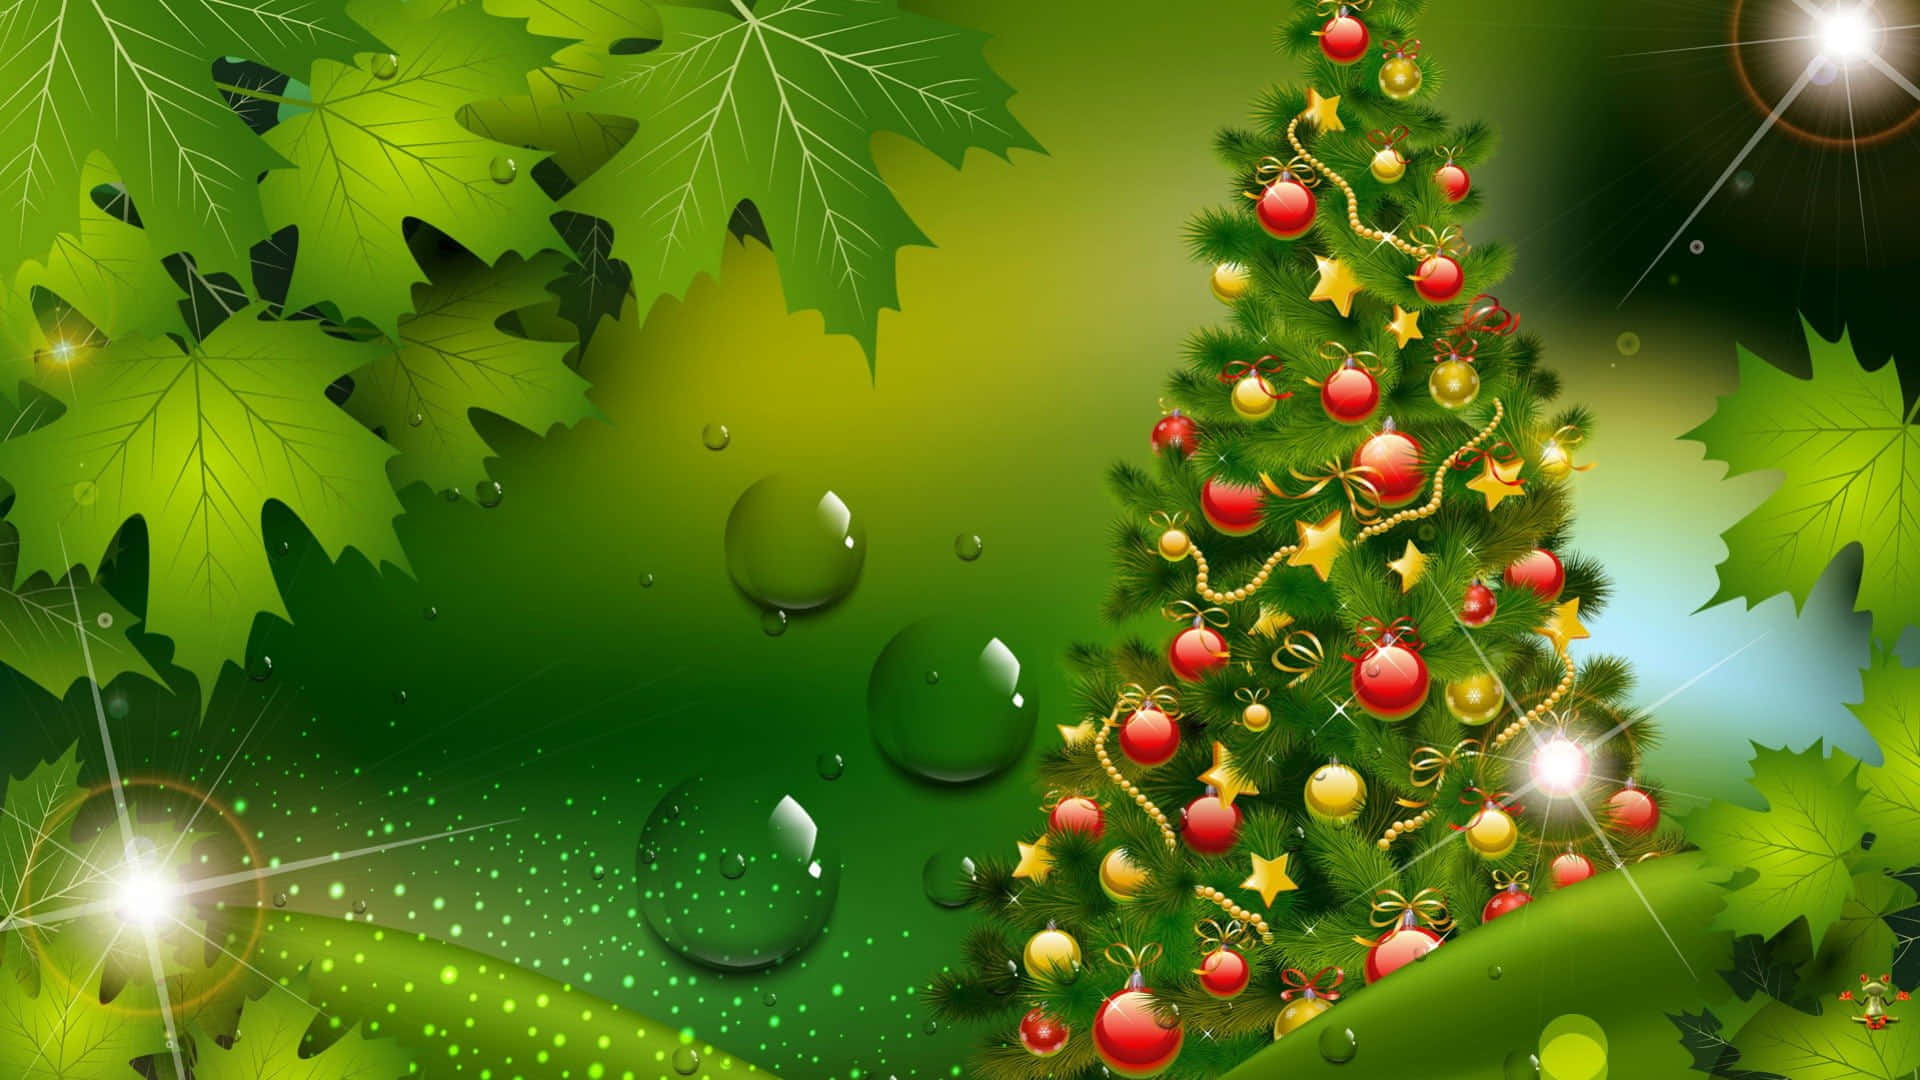 Feieredie Feiertage Mit Einem Grünen Weihnachten!